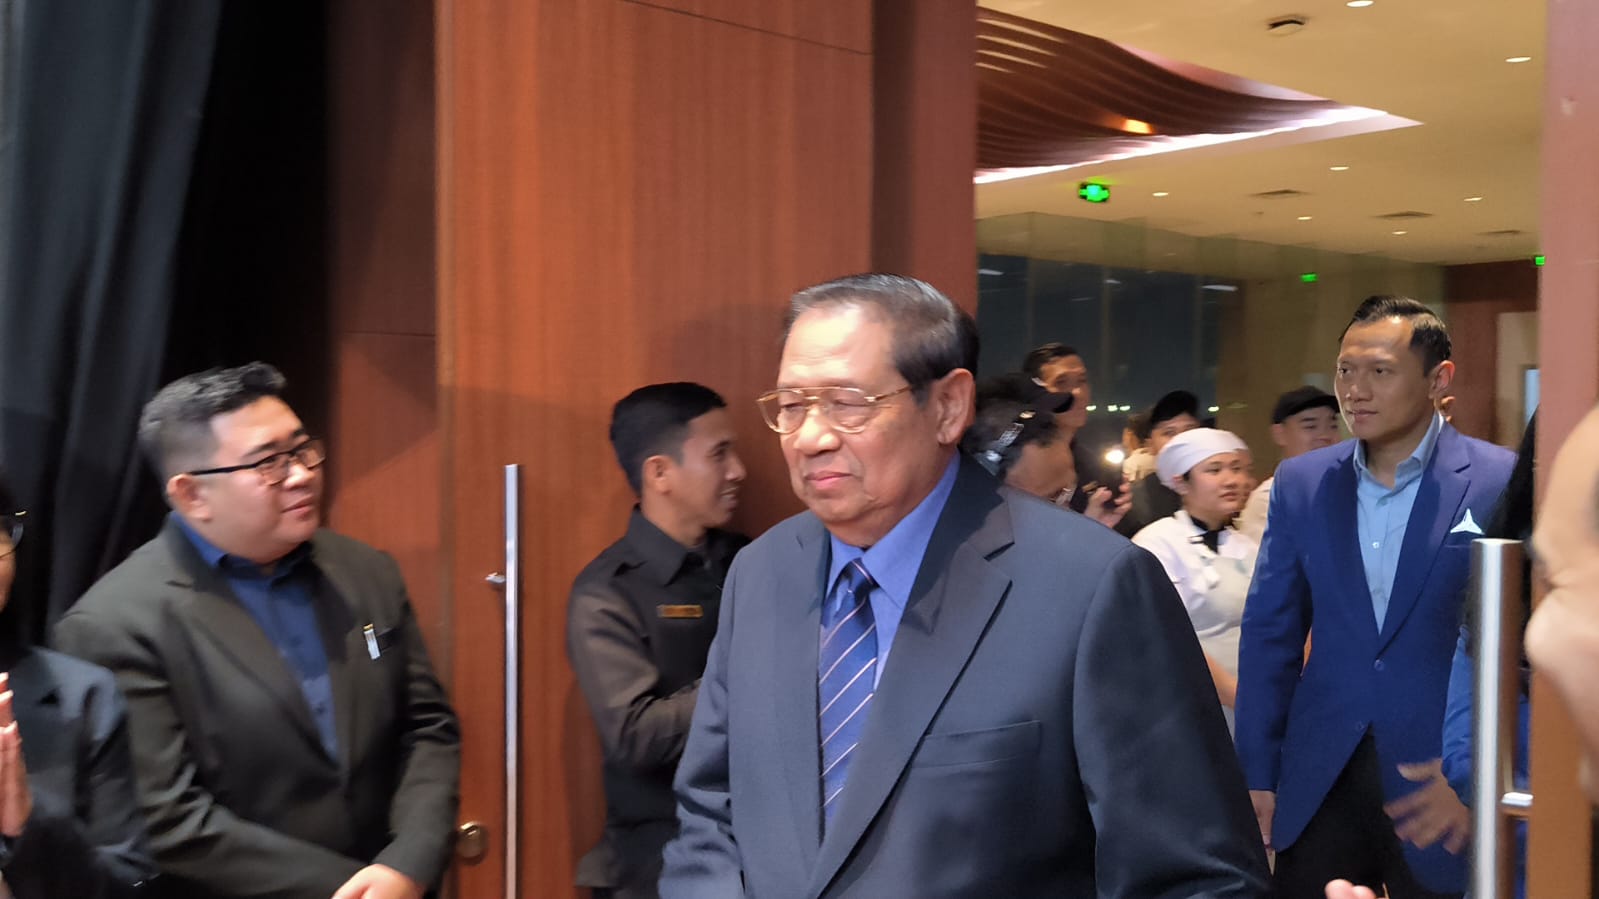 Banyak APK Caleg Rusak, SBY: Pengawas Pemilu dan Juga Aparat Penegak Hukum Harus Bisa Melindungi dan Mengamankan